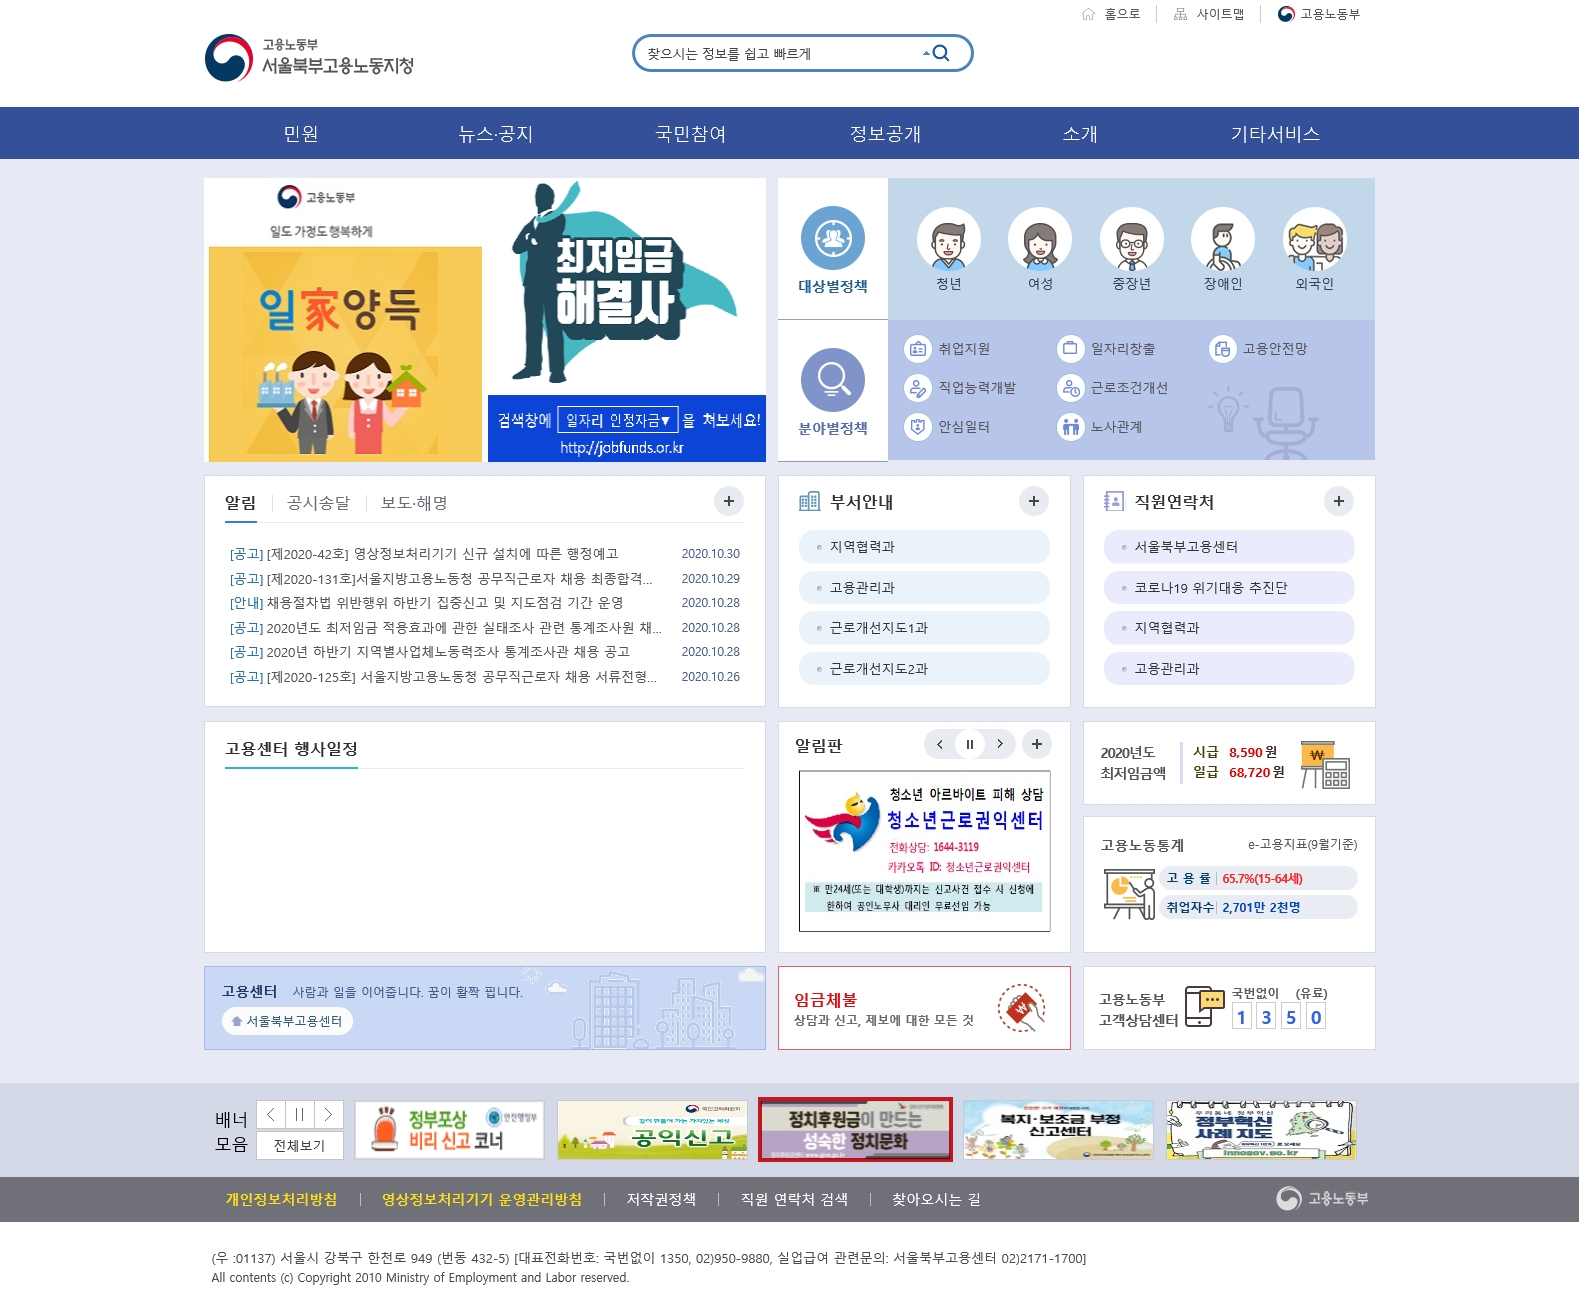 강북구선거관리위원회는 정치자금 후원 활성화 배너를 서울북부고용노동지청 홈페이지에 게시하였습니다.